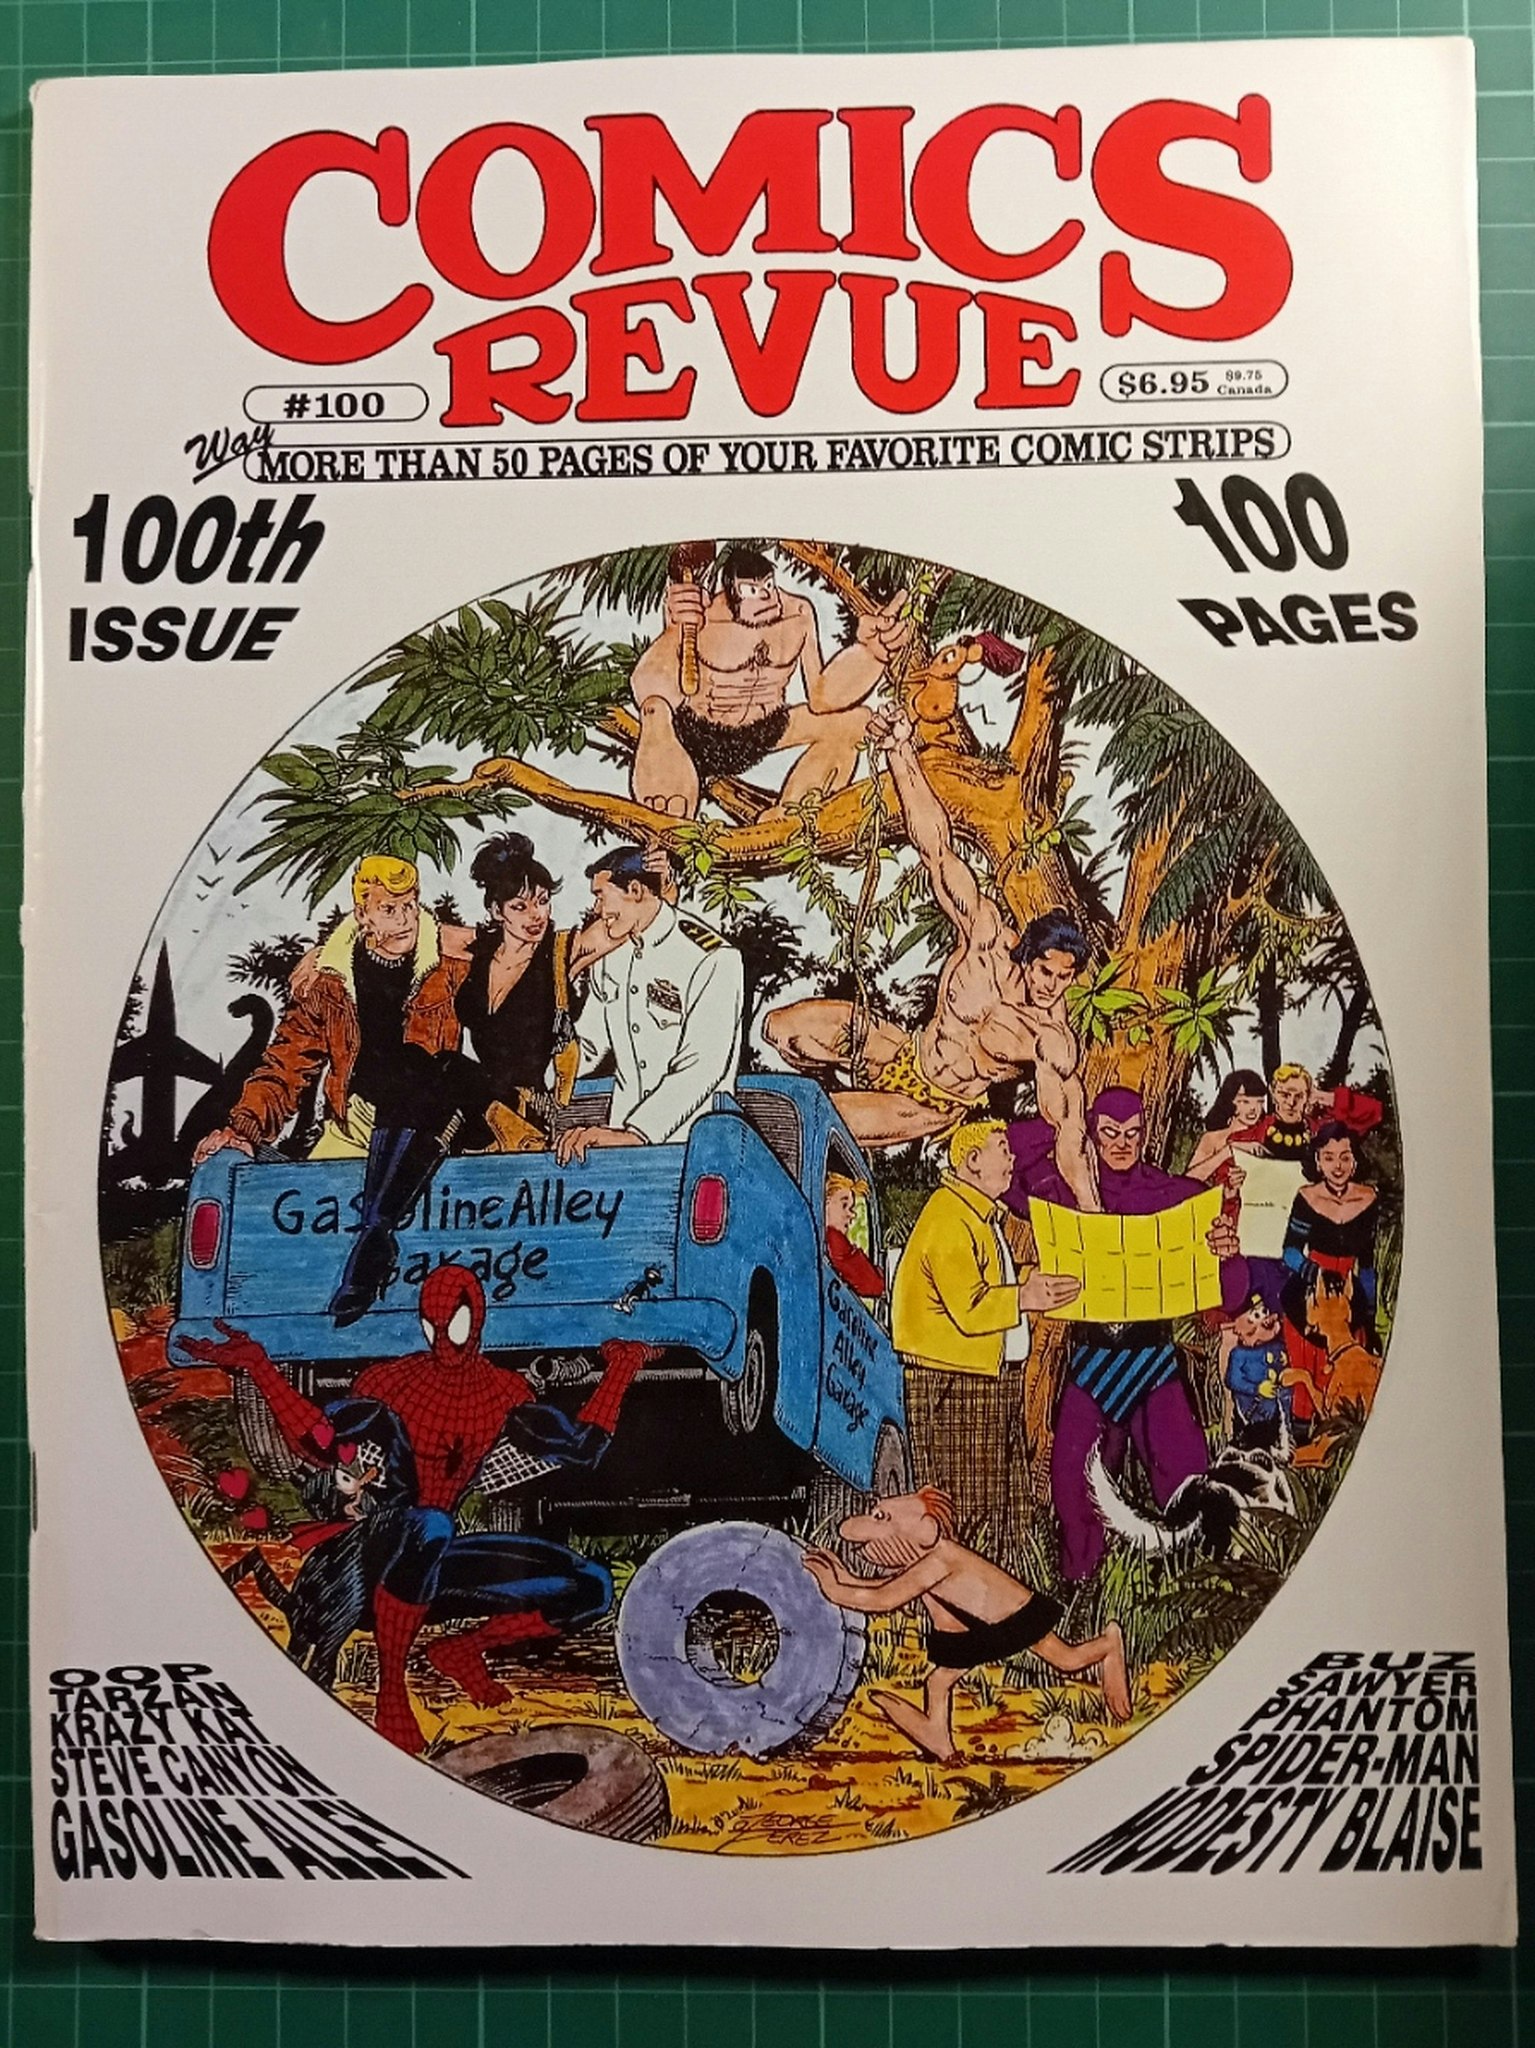 Comics revue #100